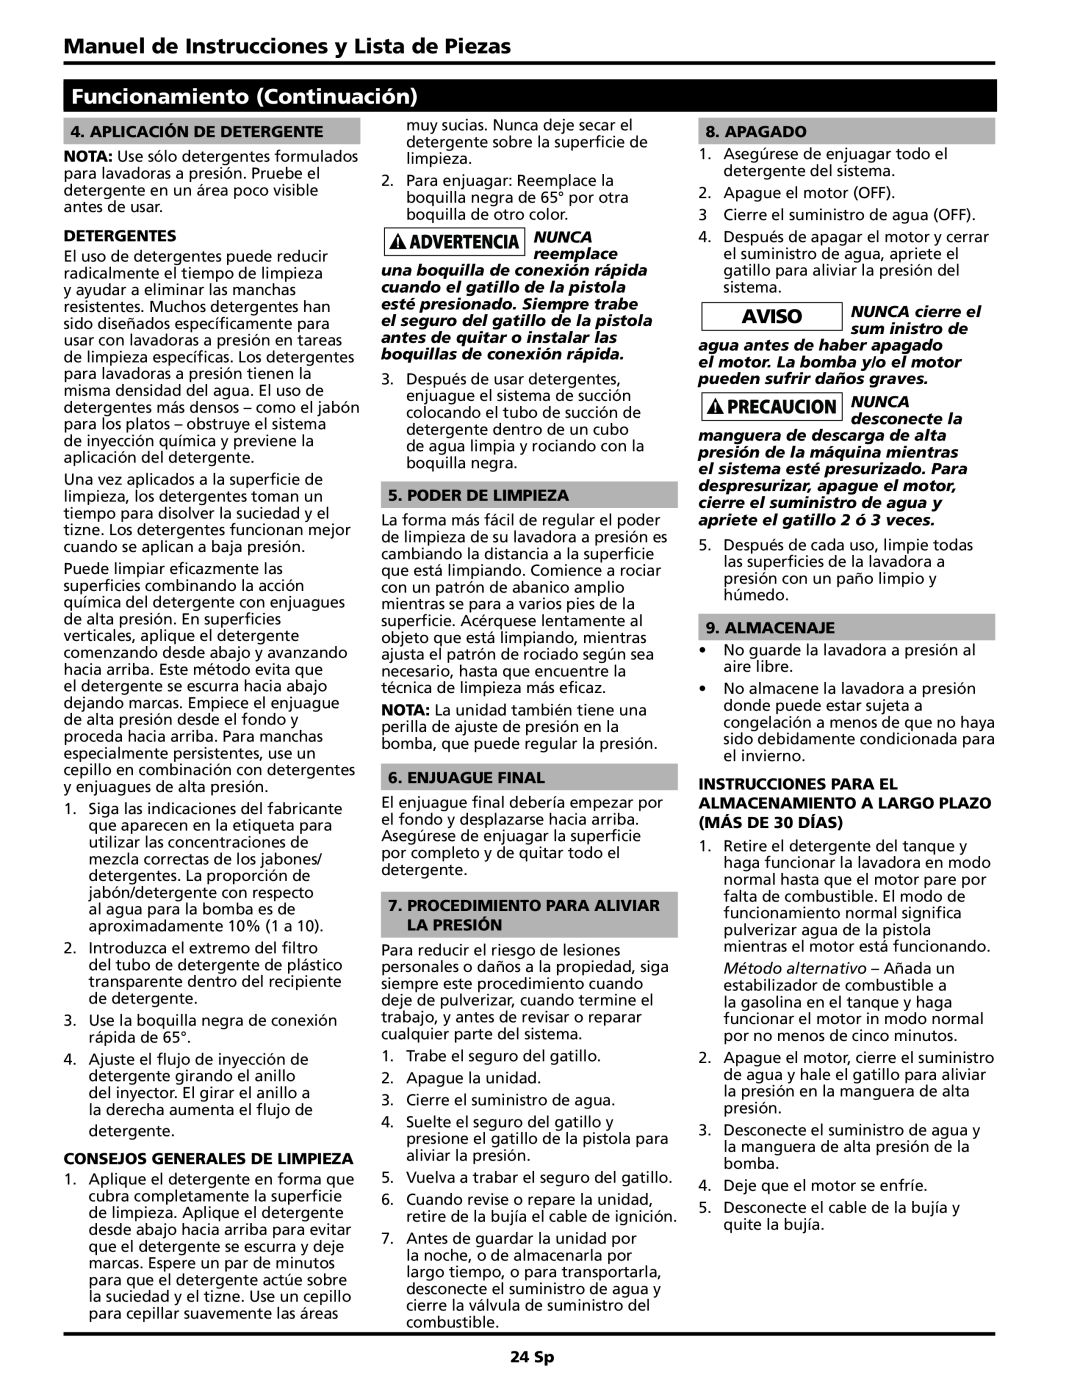 Campbell Hausfeld PW2725 Manuel de Instrucciones y Lista de Piezas, Funcionamiento Continuación, Aplicación de detergente 